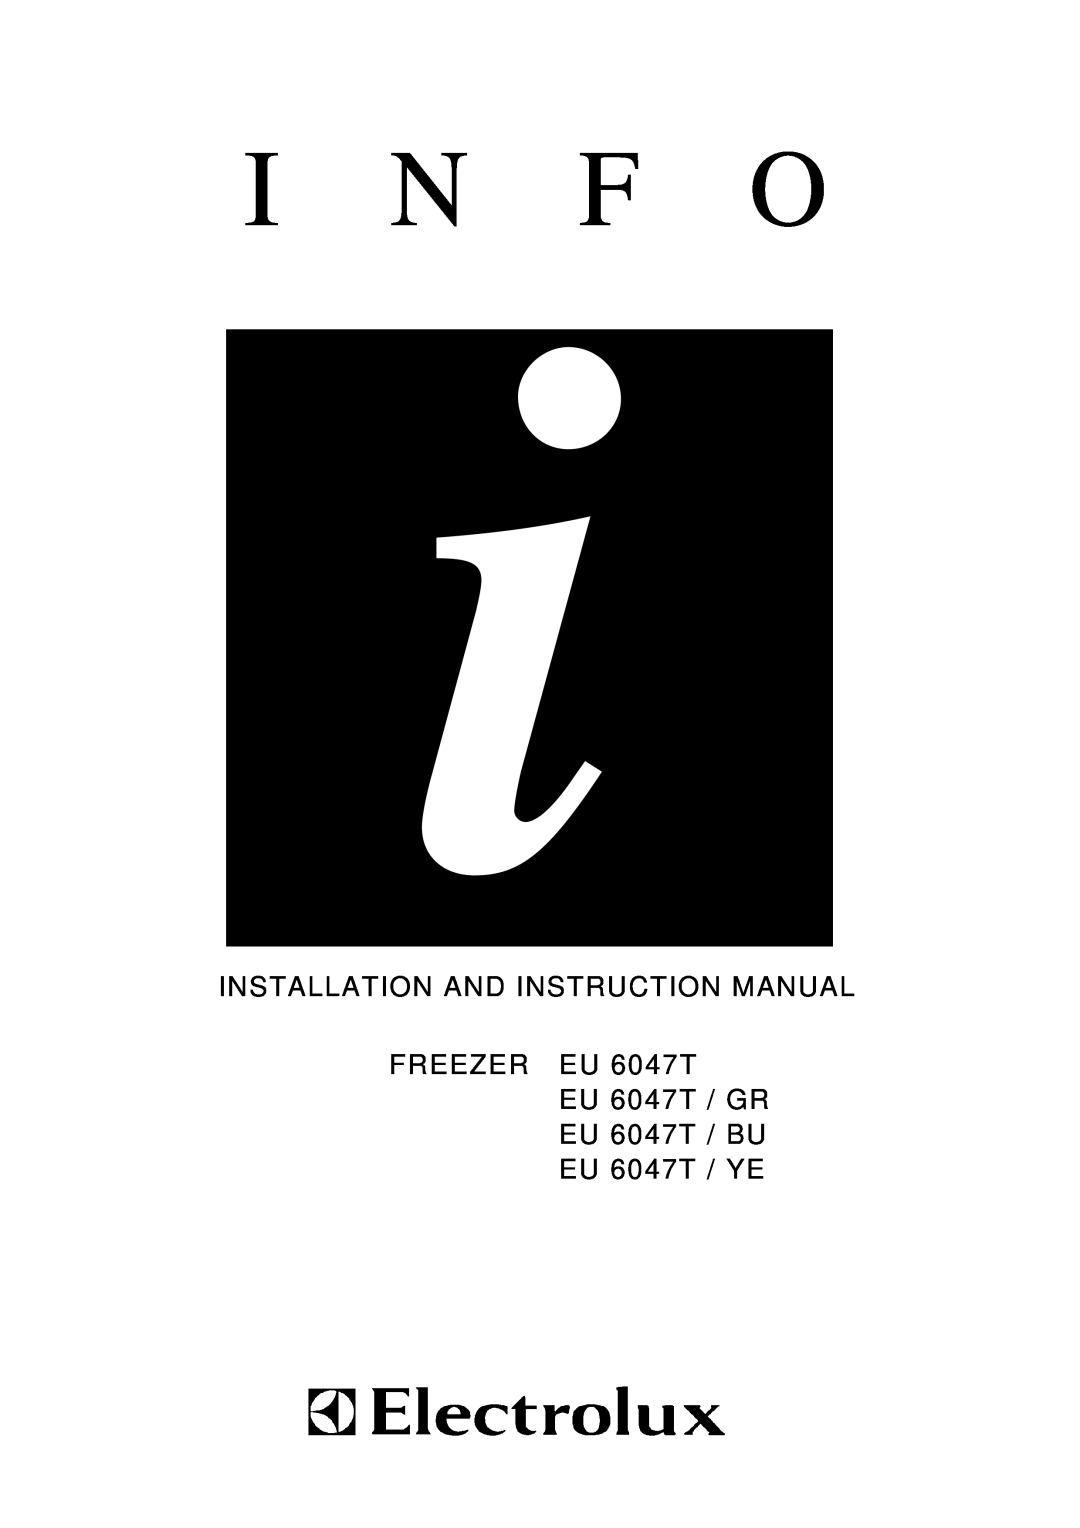 Electrolux EU 6047T / YE, EU 6047T / GR instruction manual I N F O, Installation And Instruction Manual, FREEZER EU 6047T 